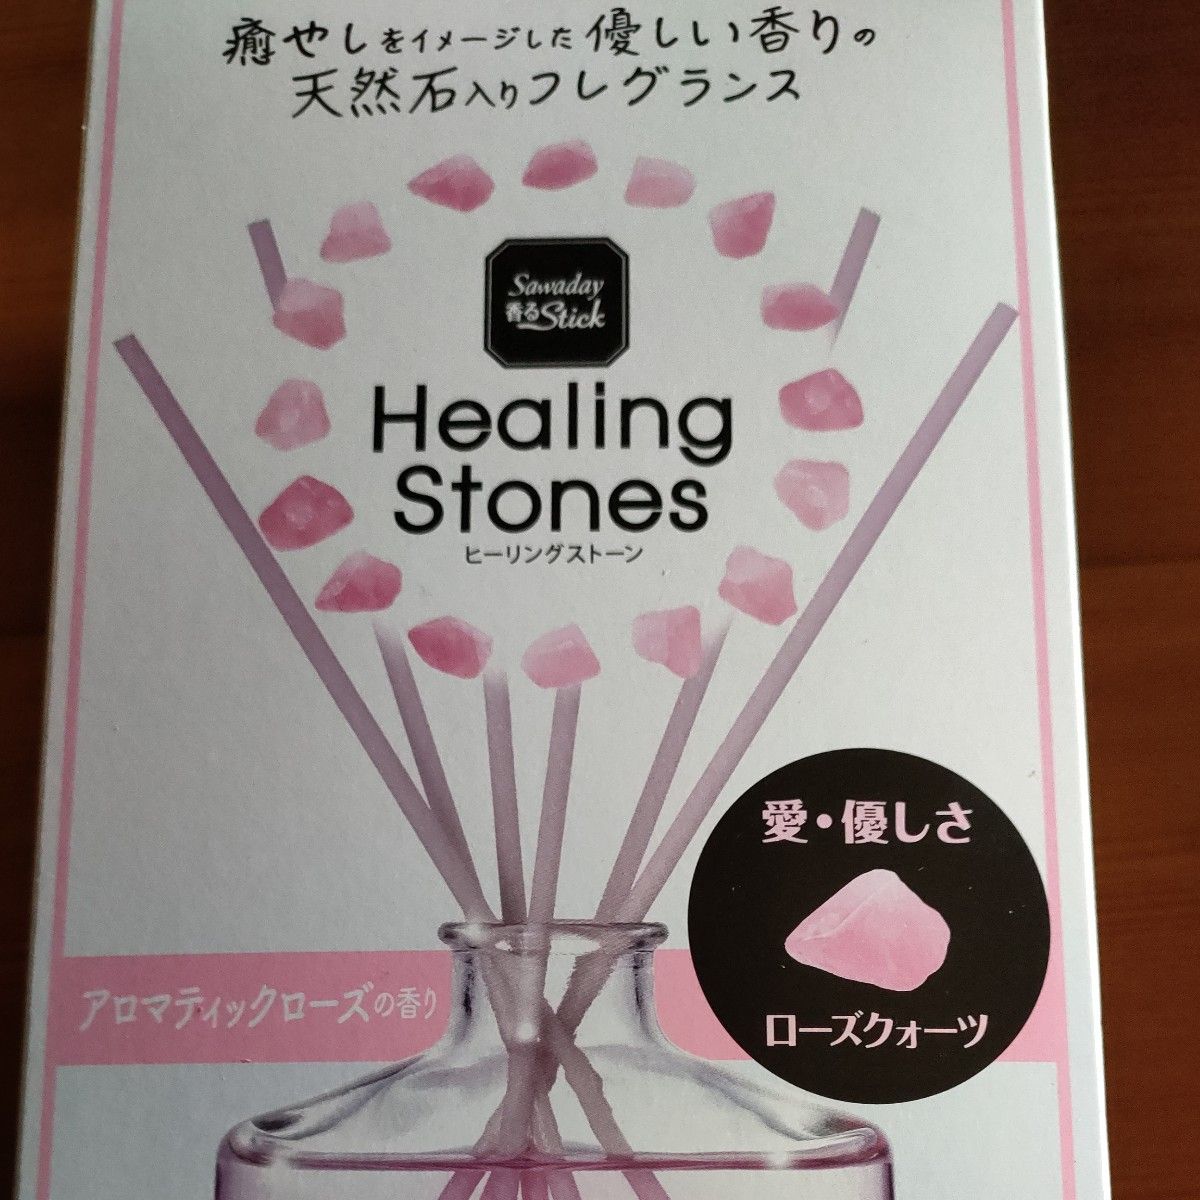 Sawaday 香るStick Healing Stones（ヒーリングストーン）アロマティックローズの香り ローズクォーツ 3個